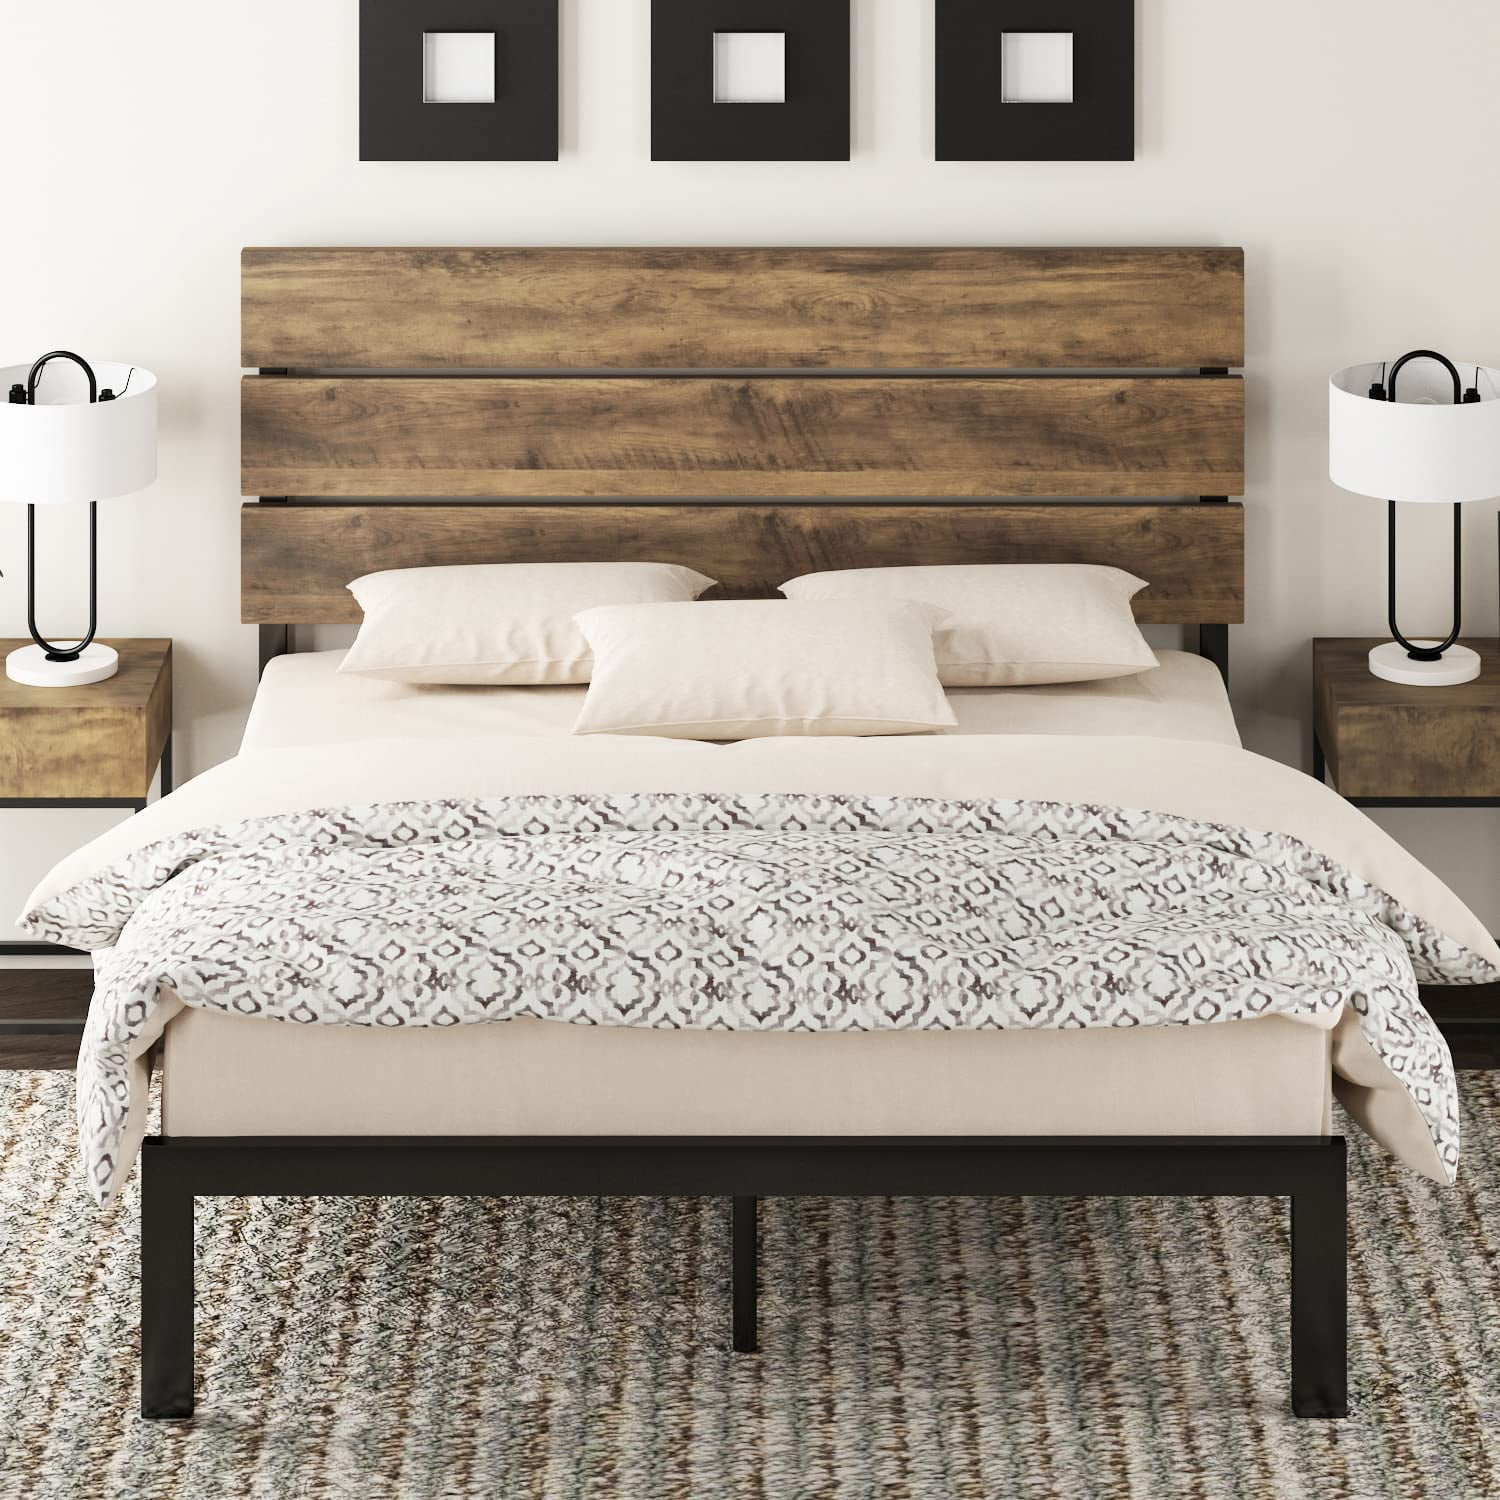 Queen Size Platform Metal Bed Frame Wooden Headboard & Slats Bedroom Furniture 